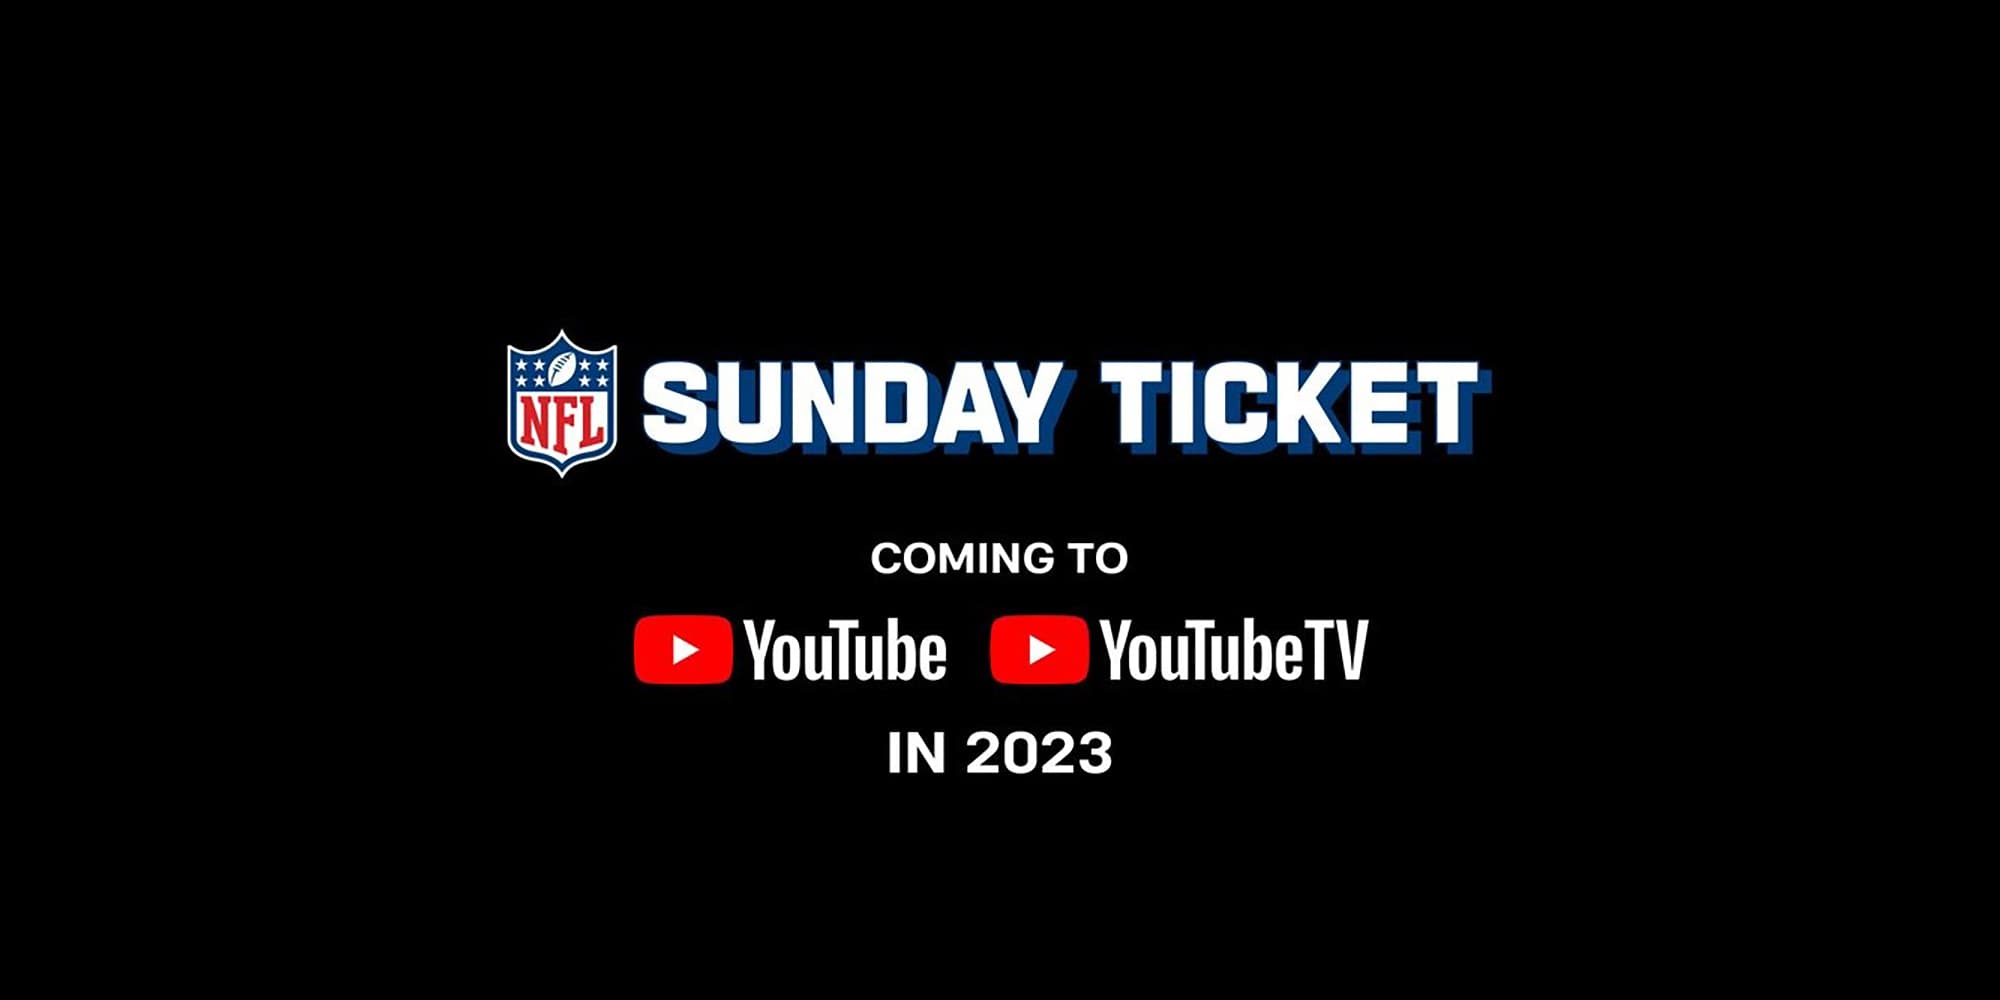 NFL Sunday Ticket on YouTube price estimated